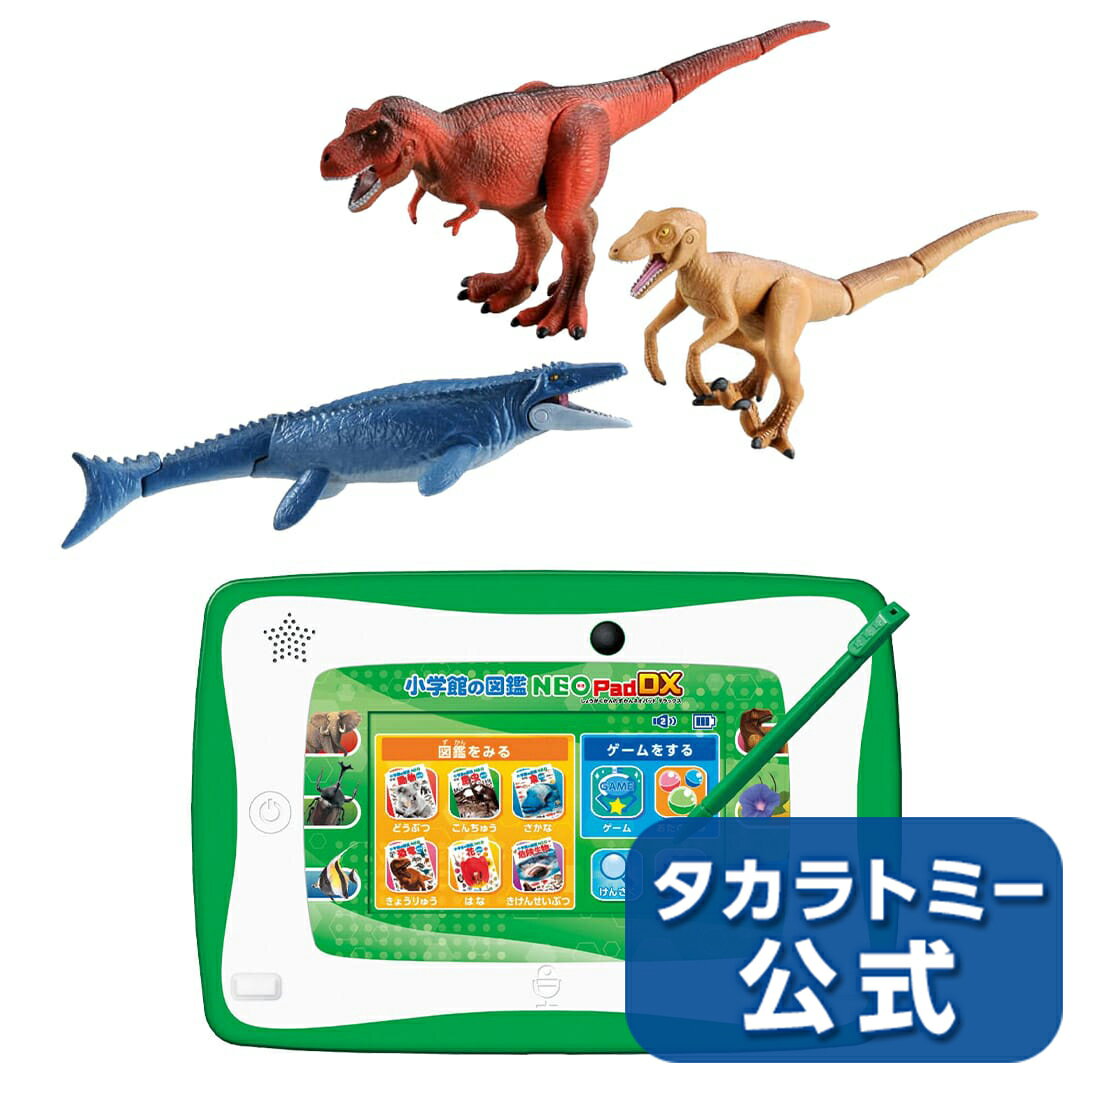 【メーカー公式オリジナルセット】小学館の図鑑NEOPadDX+アニア最強恐竜バトルセット